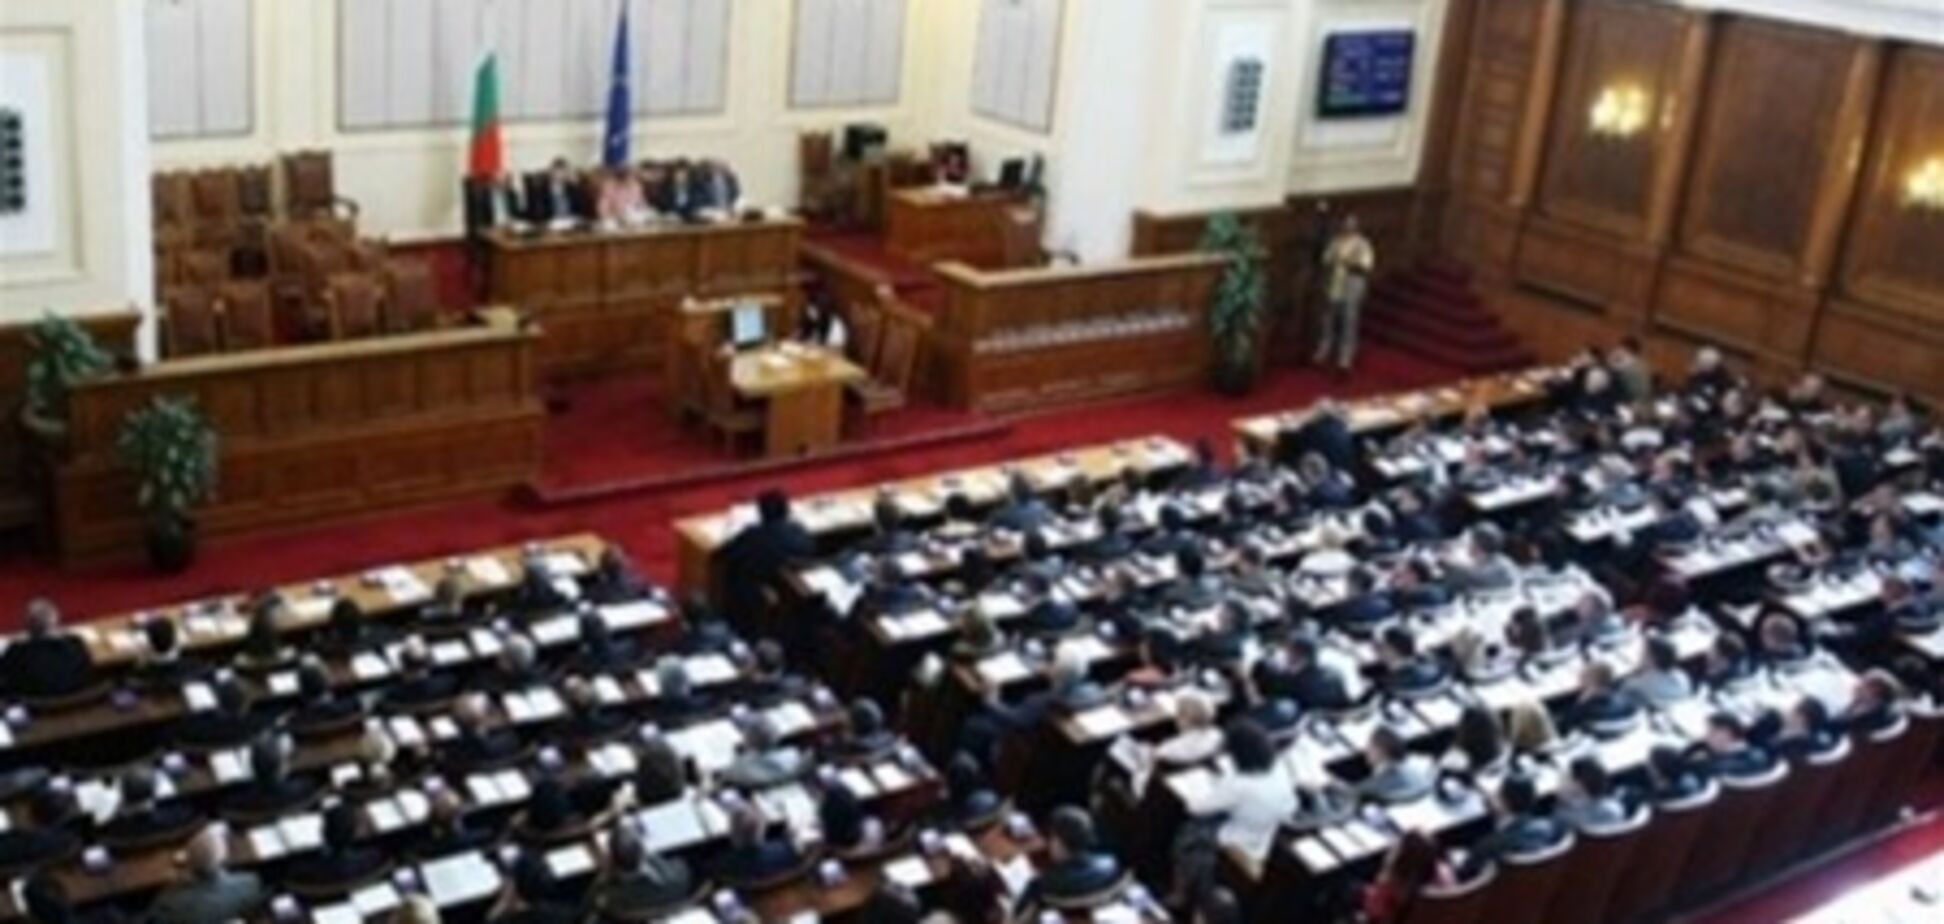 Ни одна партия не получила большинства на выборах в парламент Болгарии